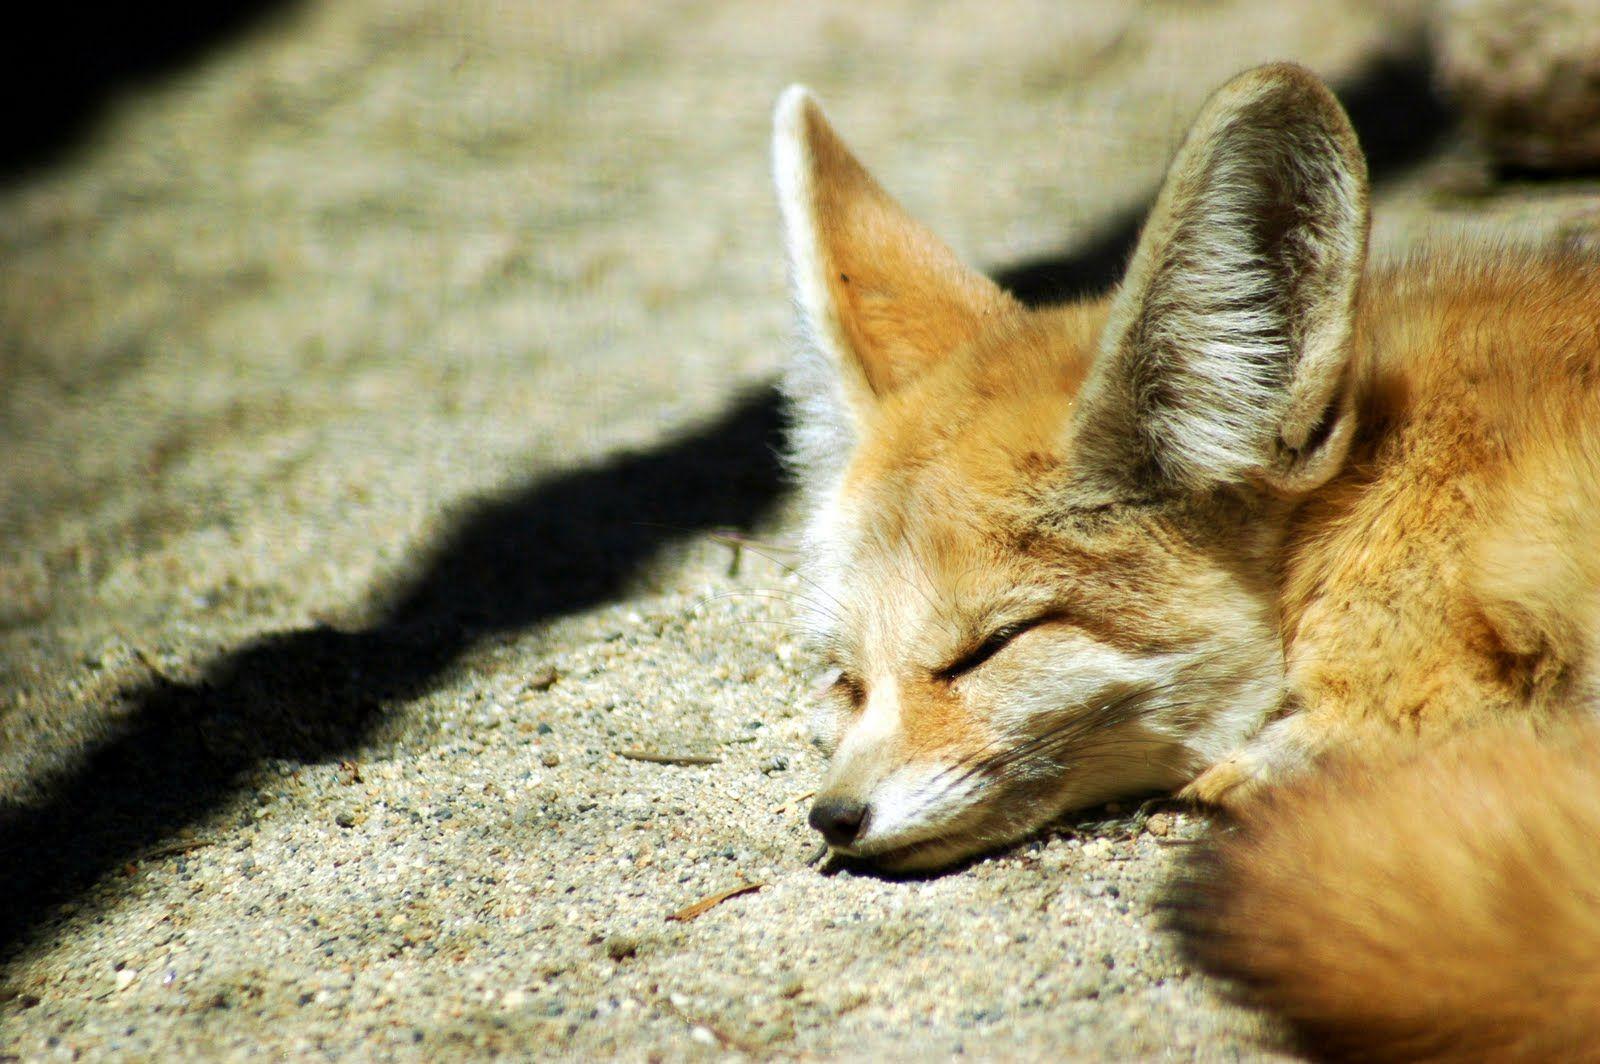 Fennec fox. R's Fennec Foxes!. Fennec fox